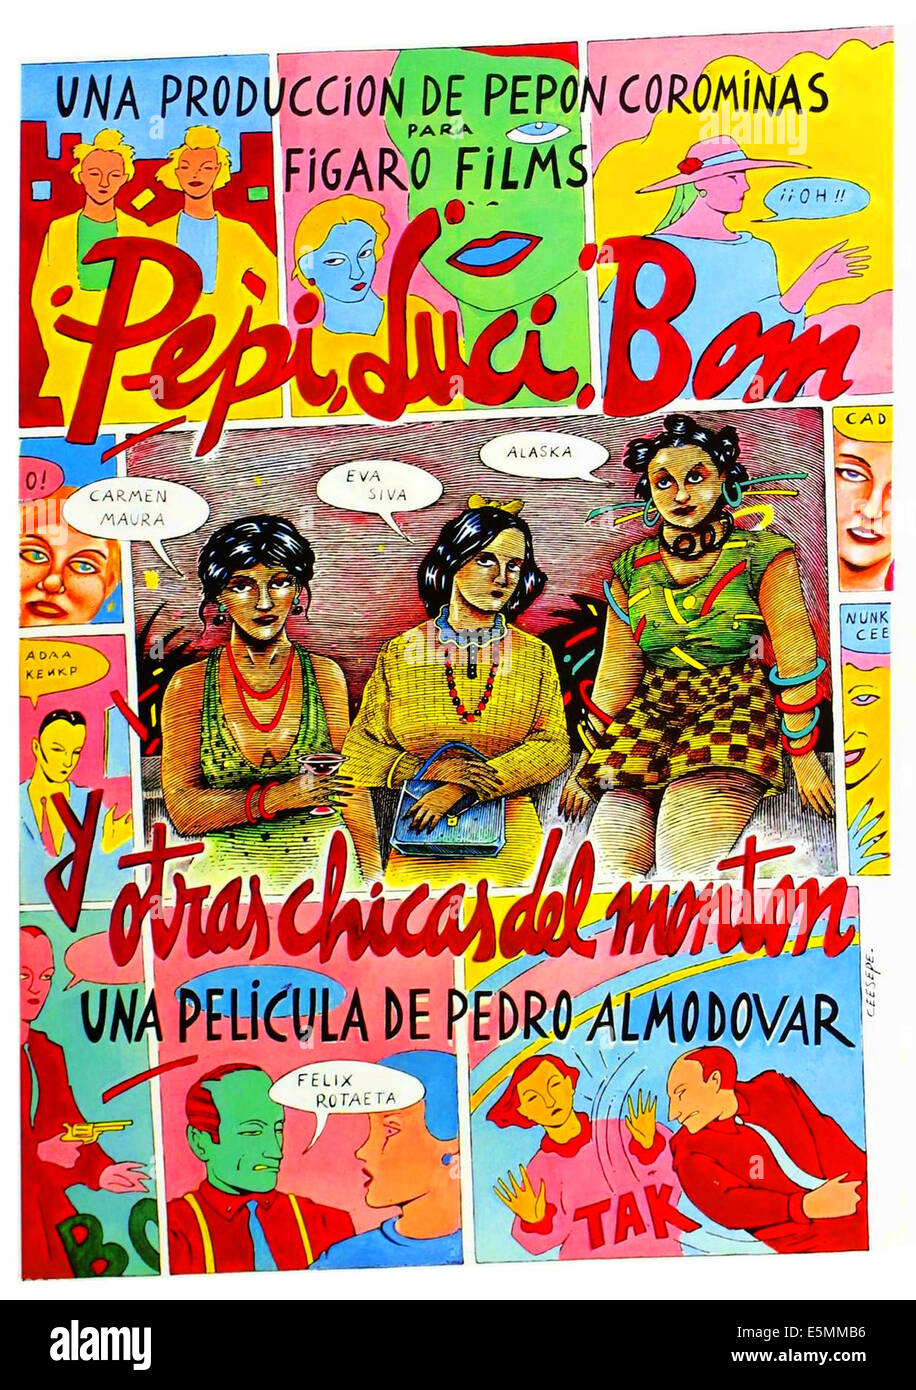 PEPI, Luci, Bom y otras chicas como MOM, (aka Pepi, Luci, BOM Y OTHER CHICAS DEL MONTON), póster Español de Arte, 1980. Foto de stock